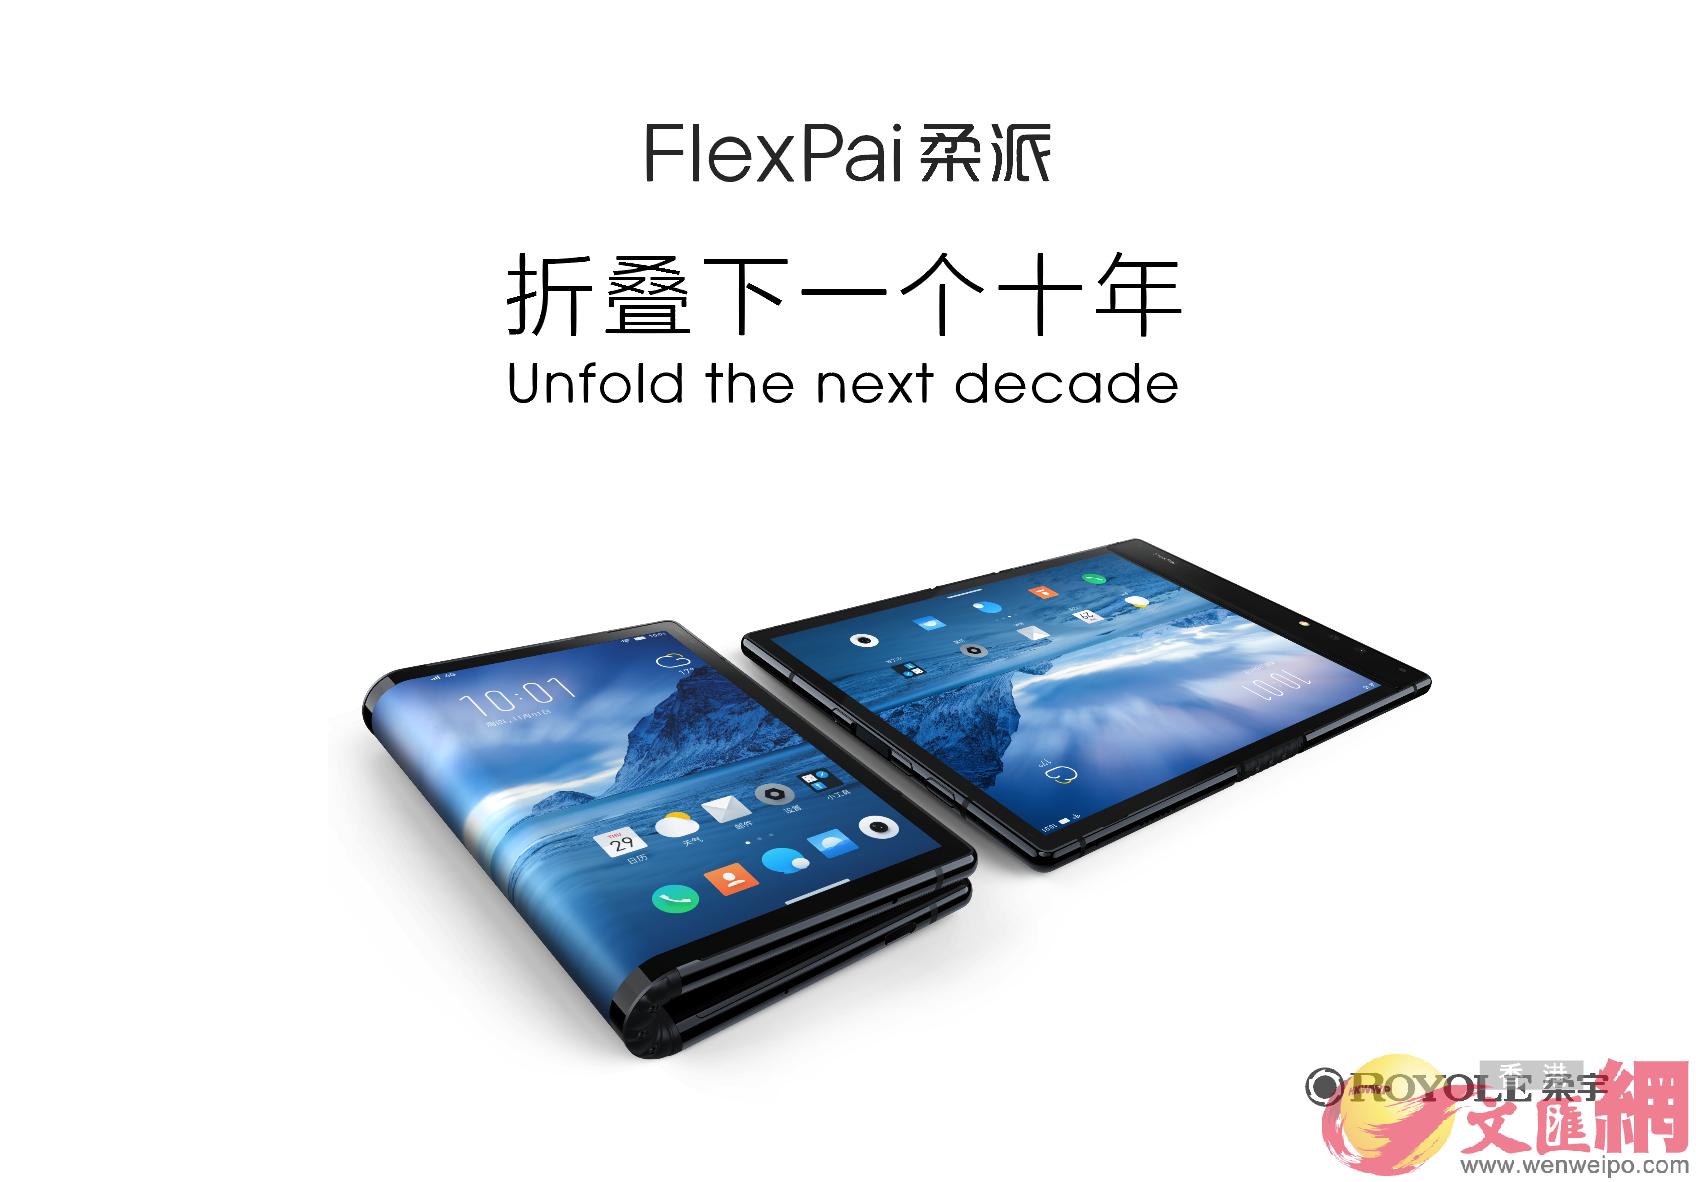 全球首款可折疊柔性屏手機u柔派vFlexPai 